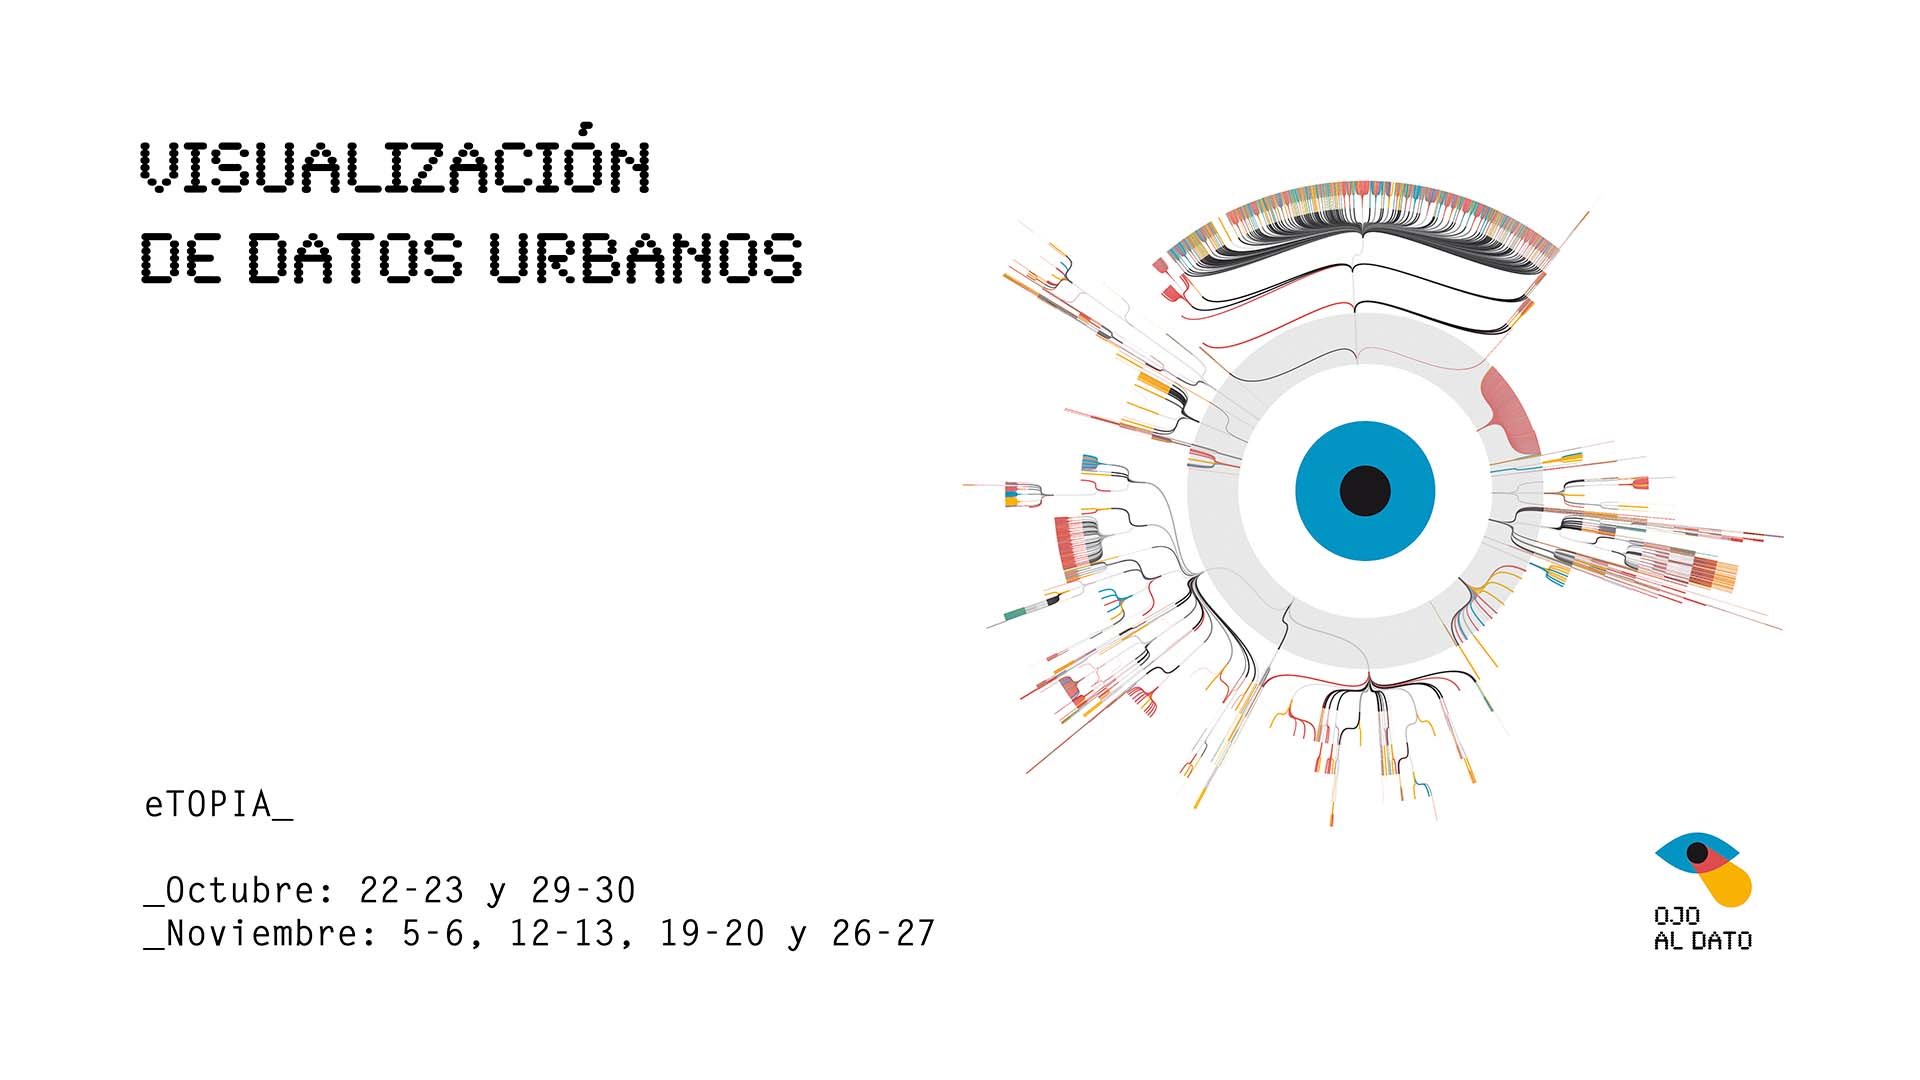 Imagen gráfica del programa de Visualización de datos urbanos de Zaragoza y acción específica de comunicación para curso.